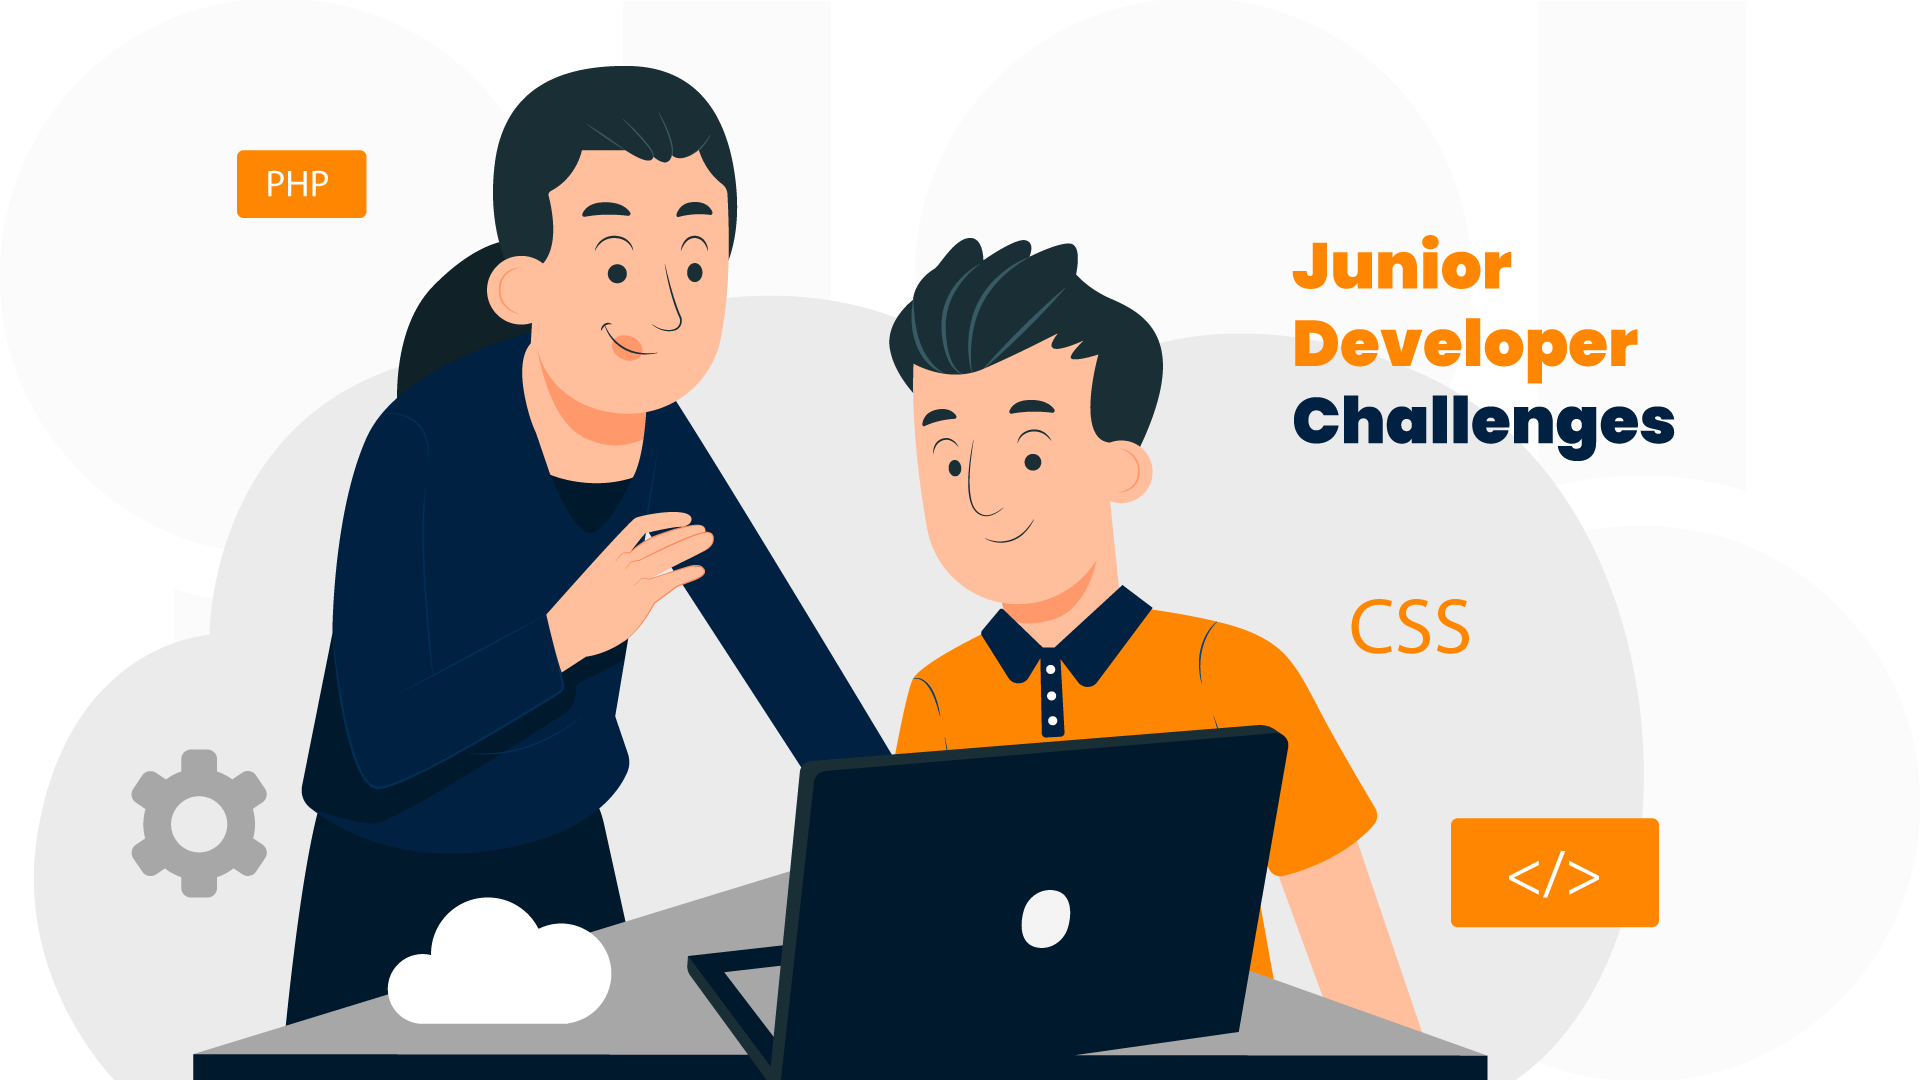 Junior Developer Challenges